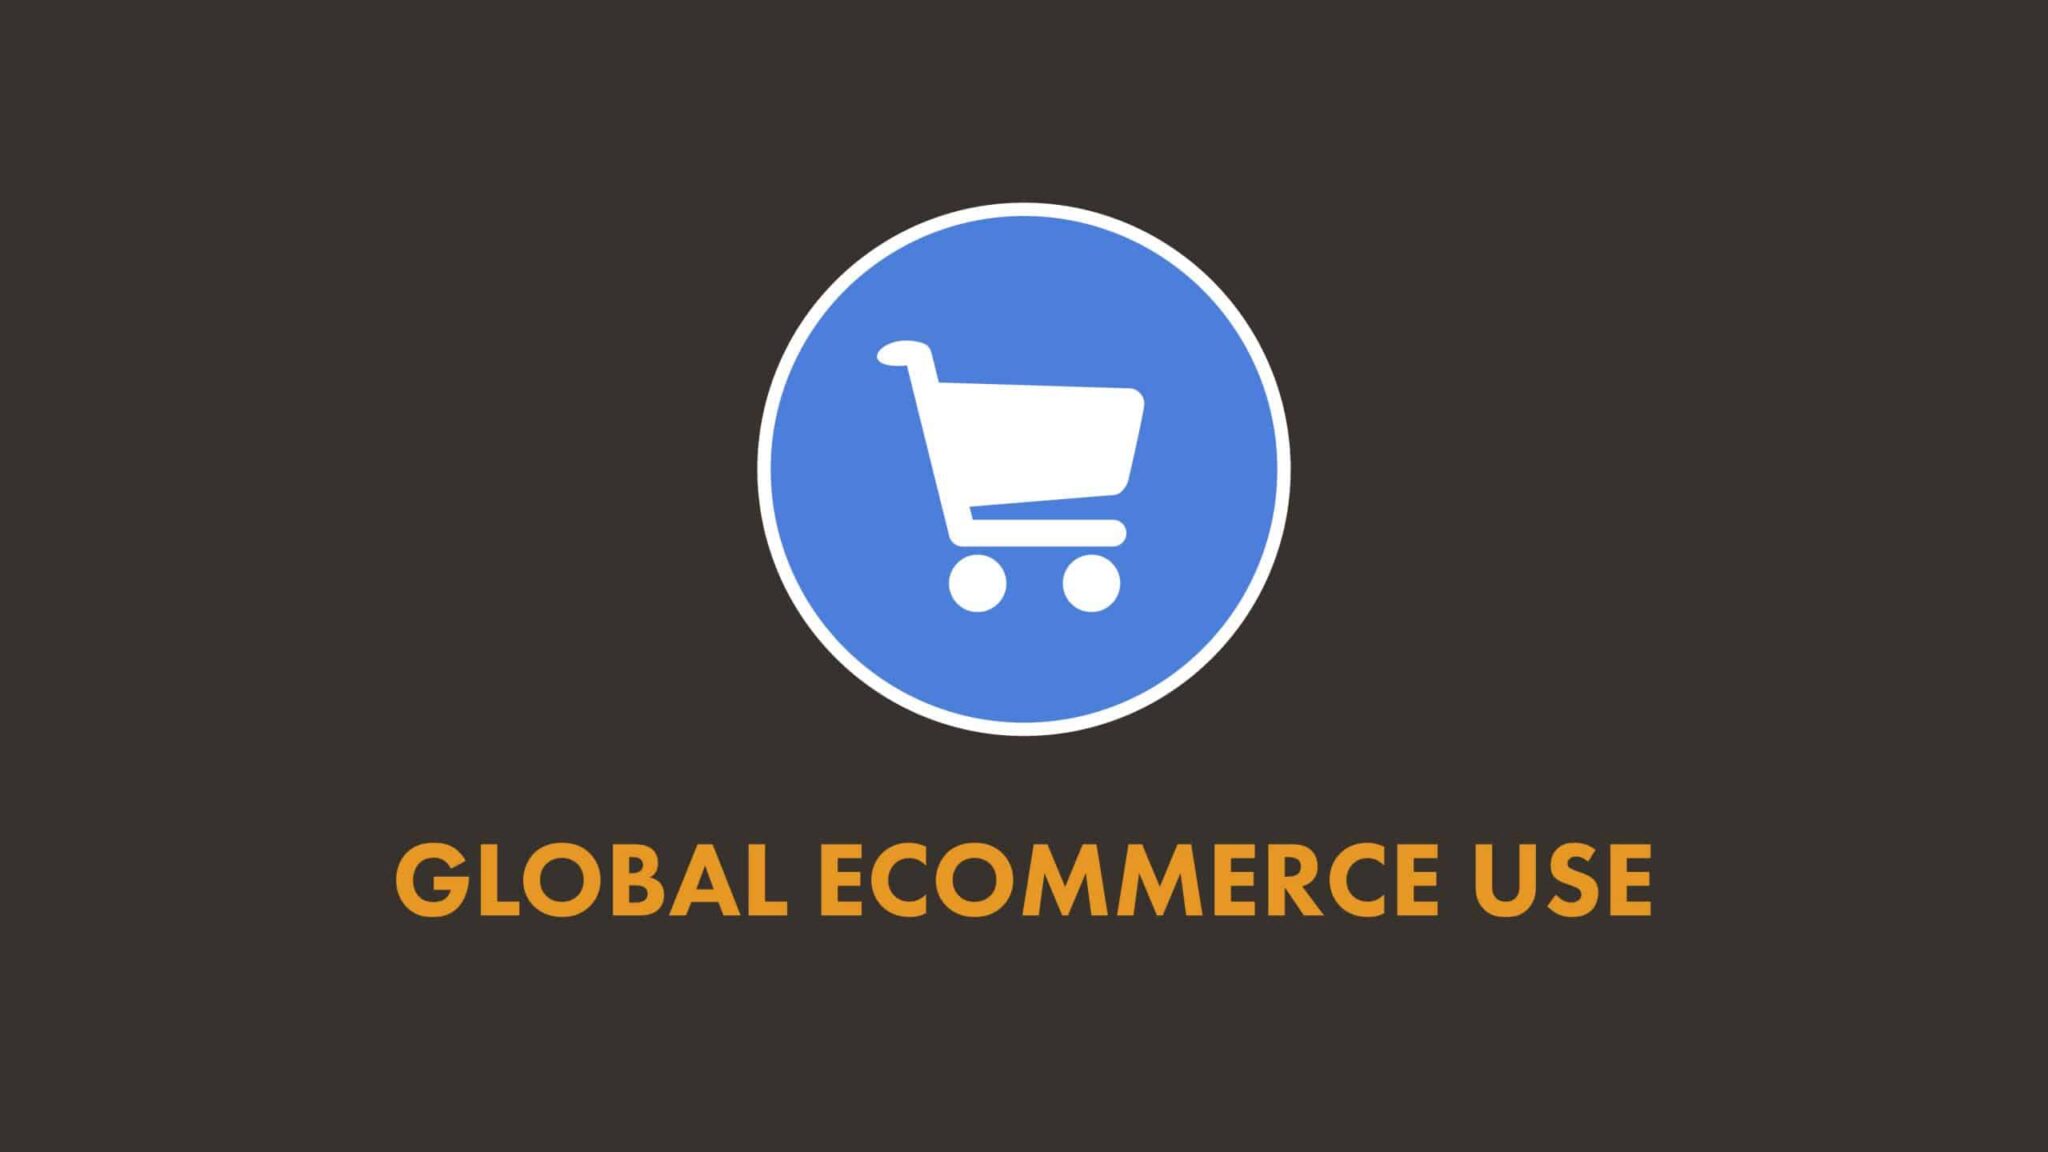 อัพเดทสถิติ E-commerce ครึ่งแรกของปี 2020 – We Are Social